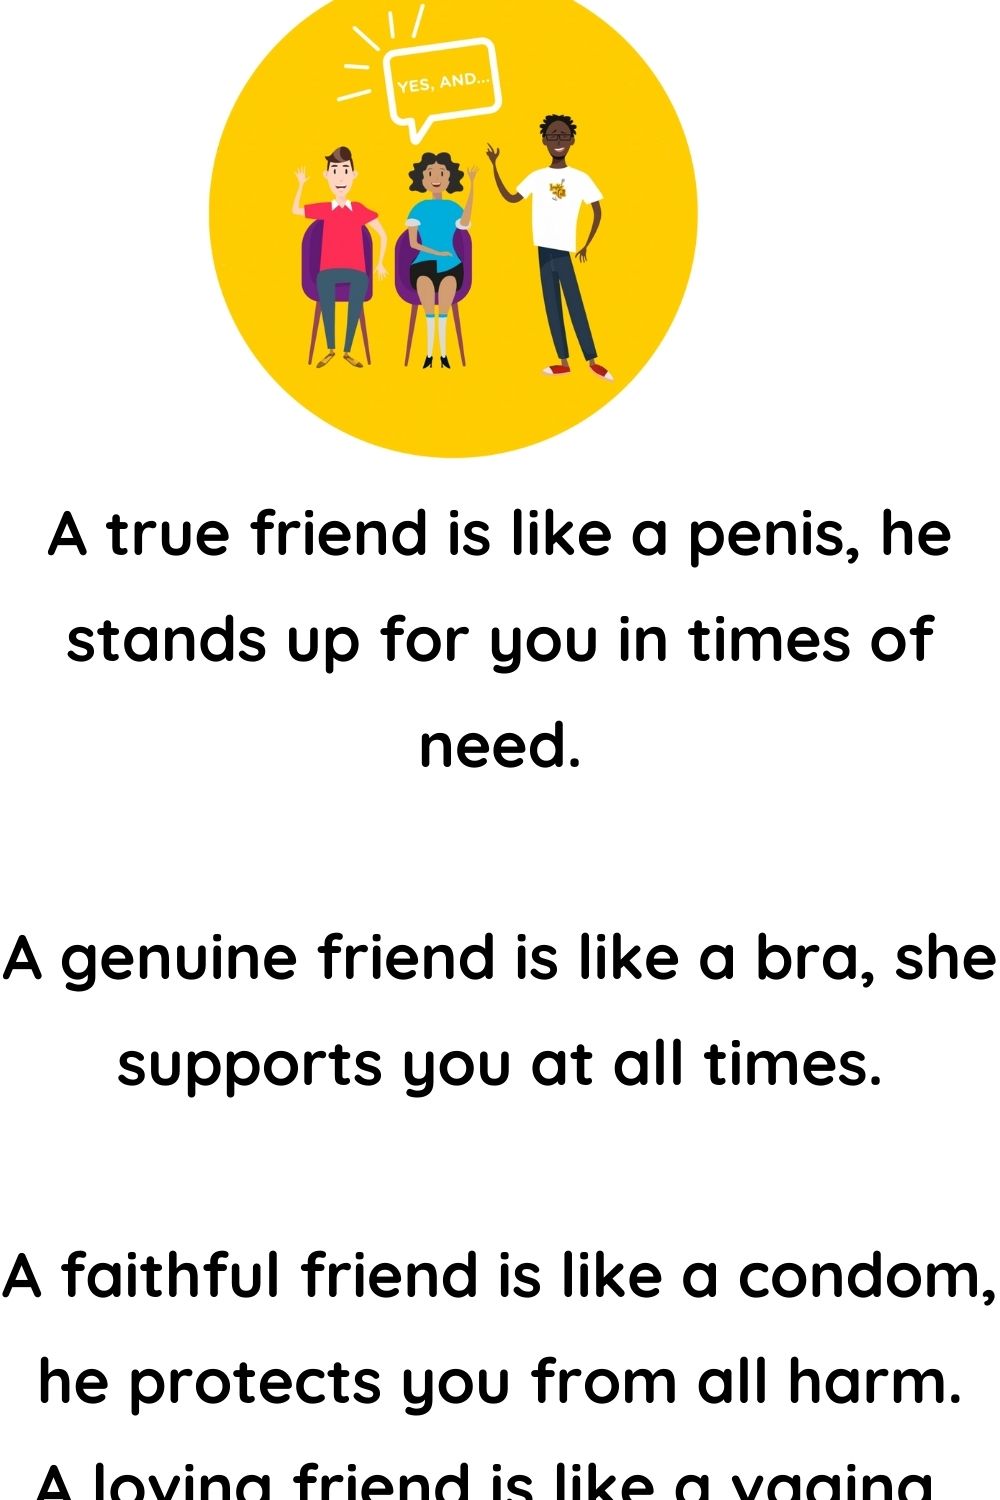 A True Friend is like